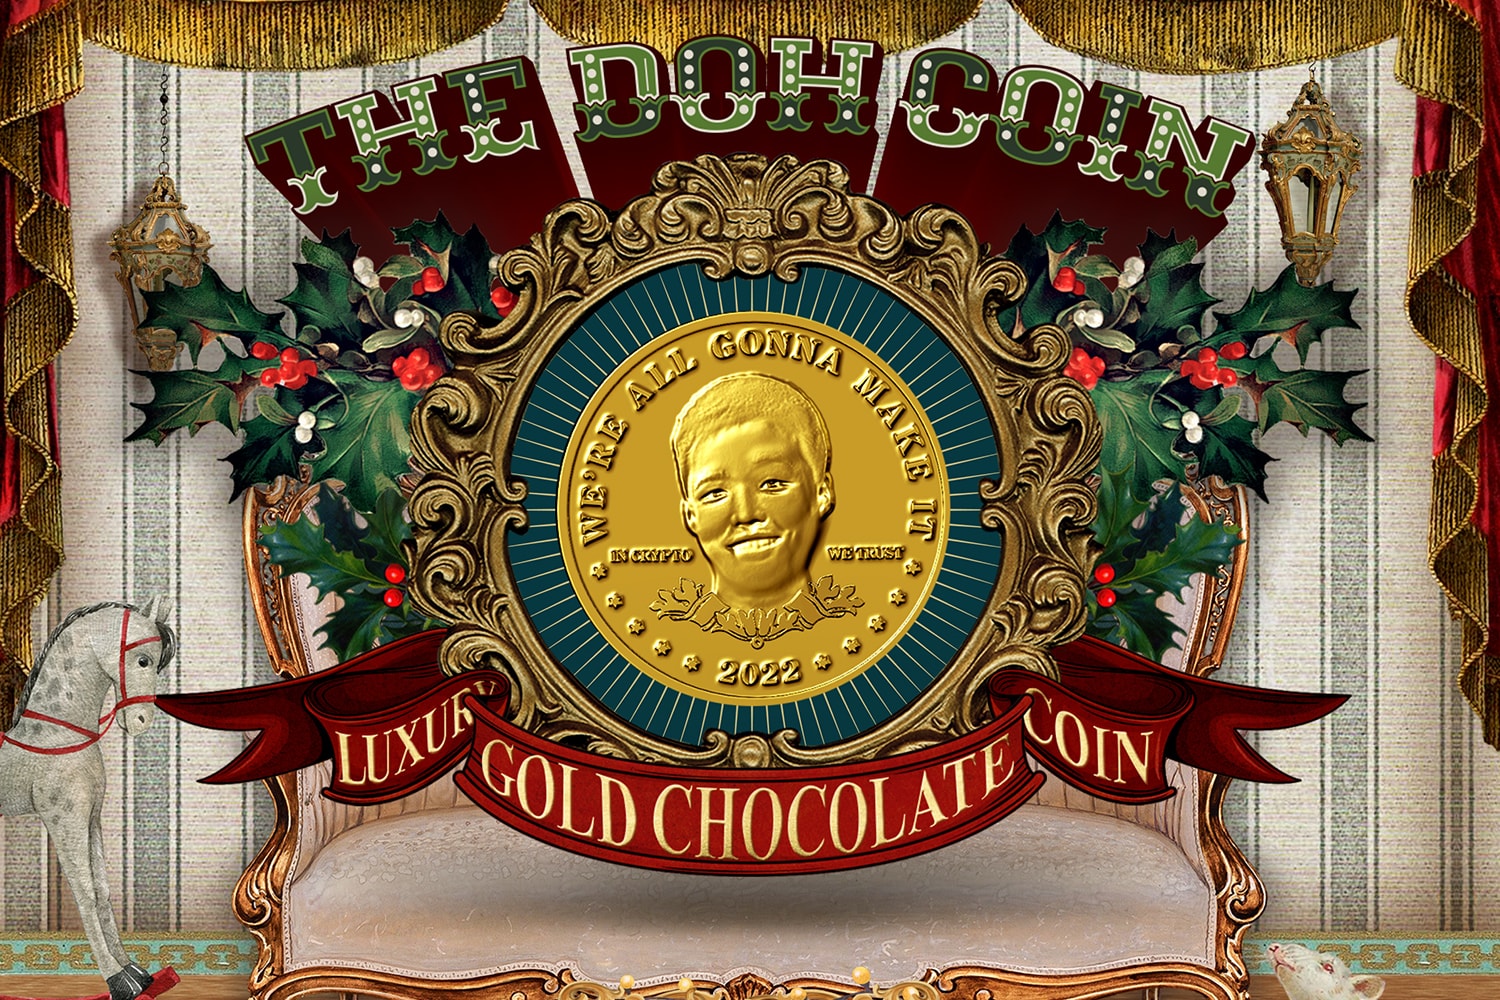 드롭키친, 크리스마스 시즌을 위한 아트 초콜릿 ‘THE DOH COIN’ 출시 dropkitchen art chocolate release